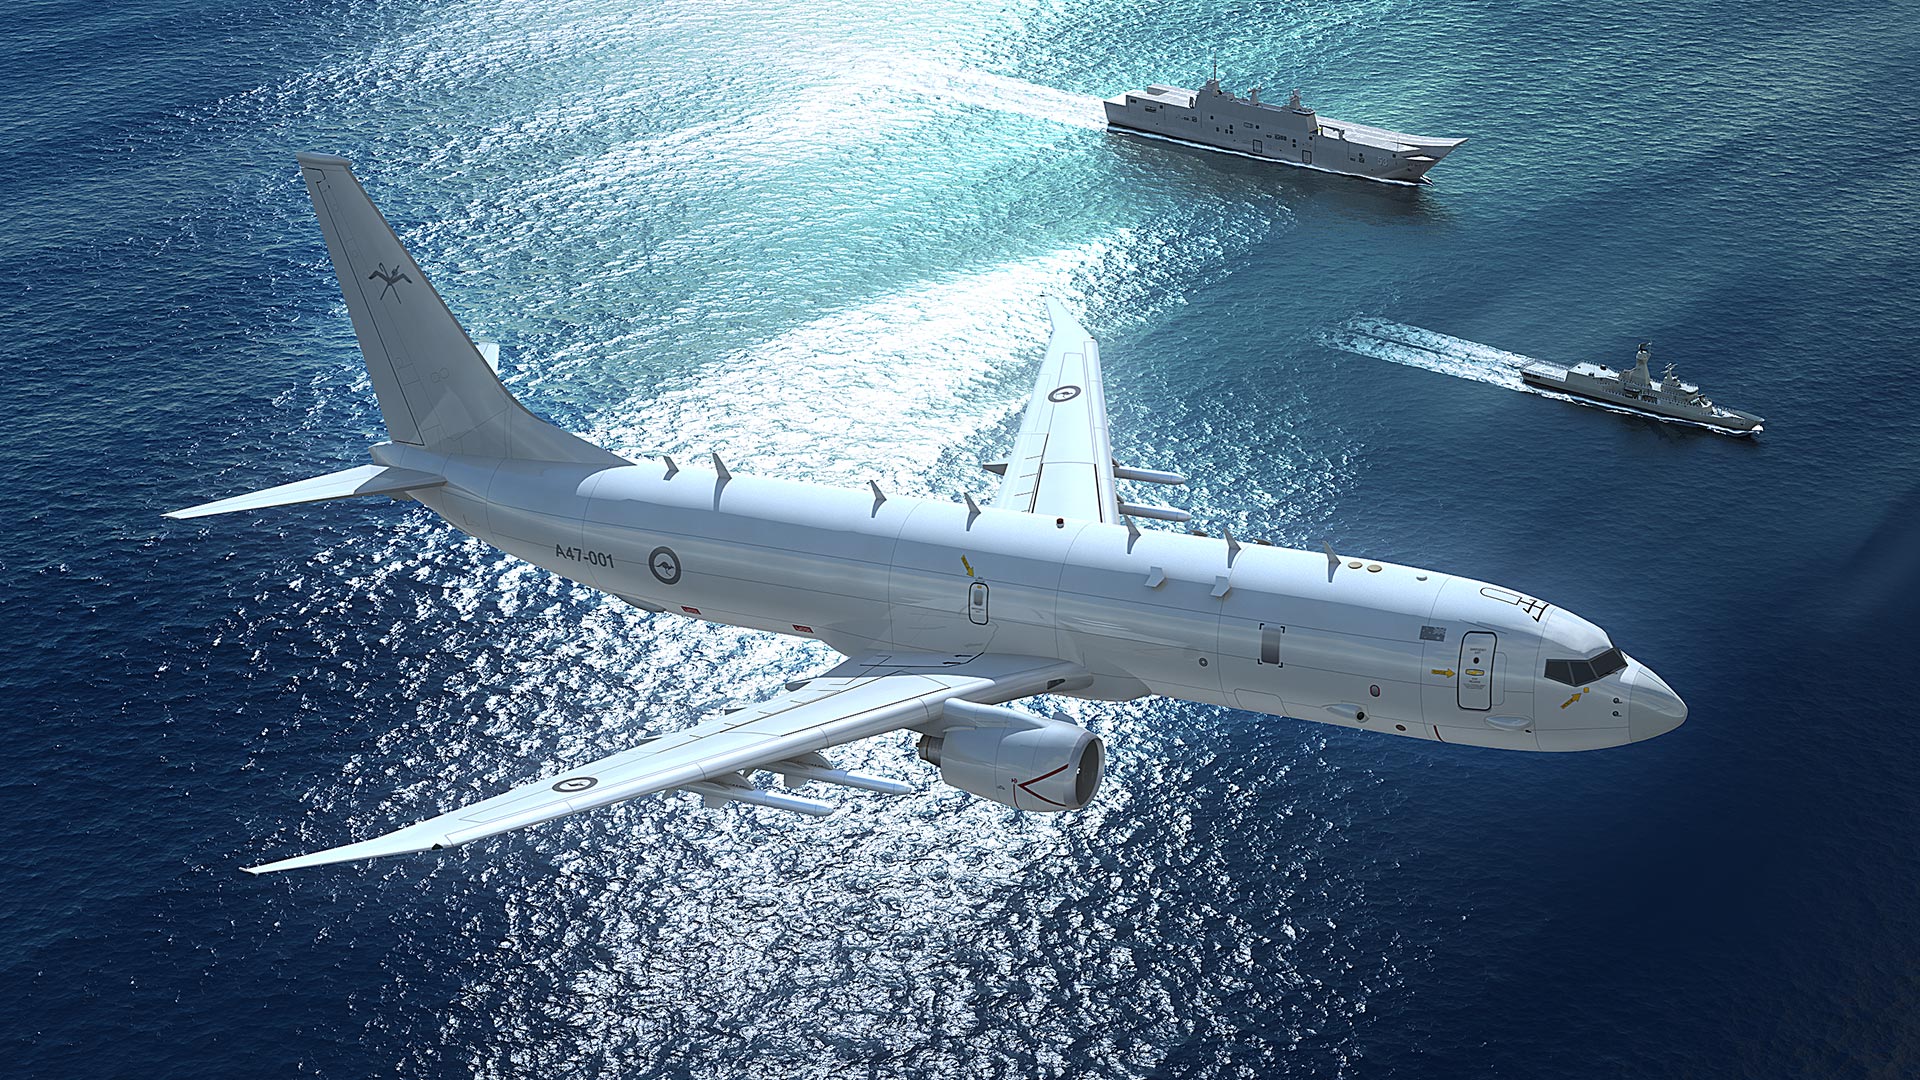 Австралія відправила в Середземне море патрульний літак P-8A Poseidon для участі в операції SEA GUARDIAN 2022